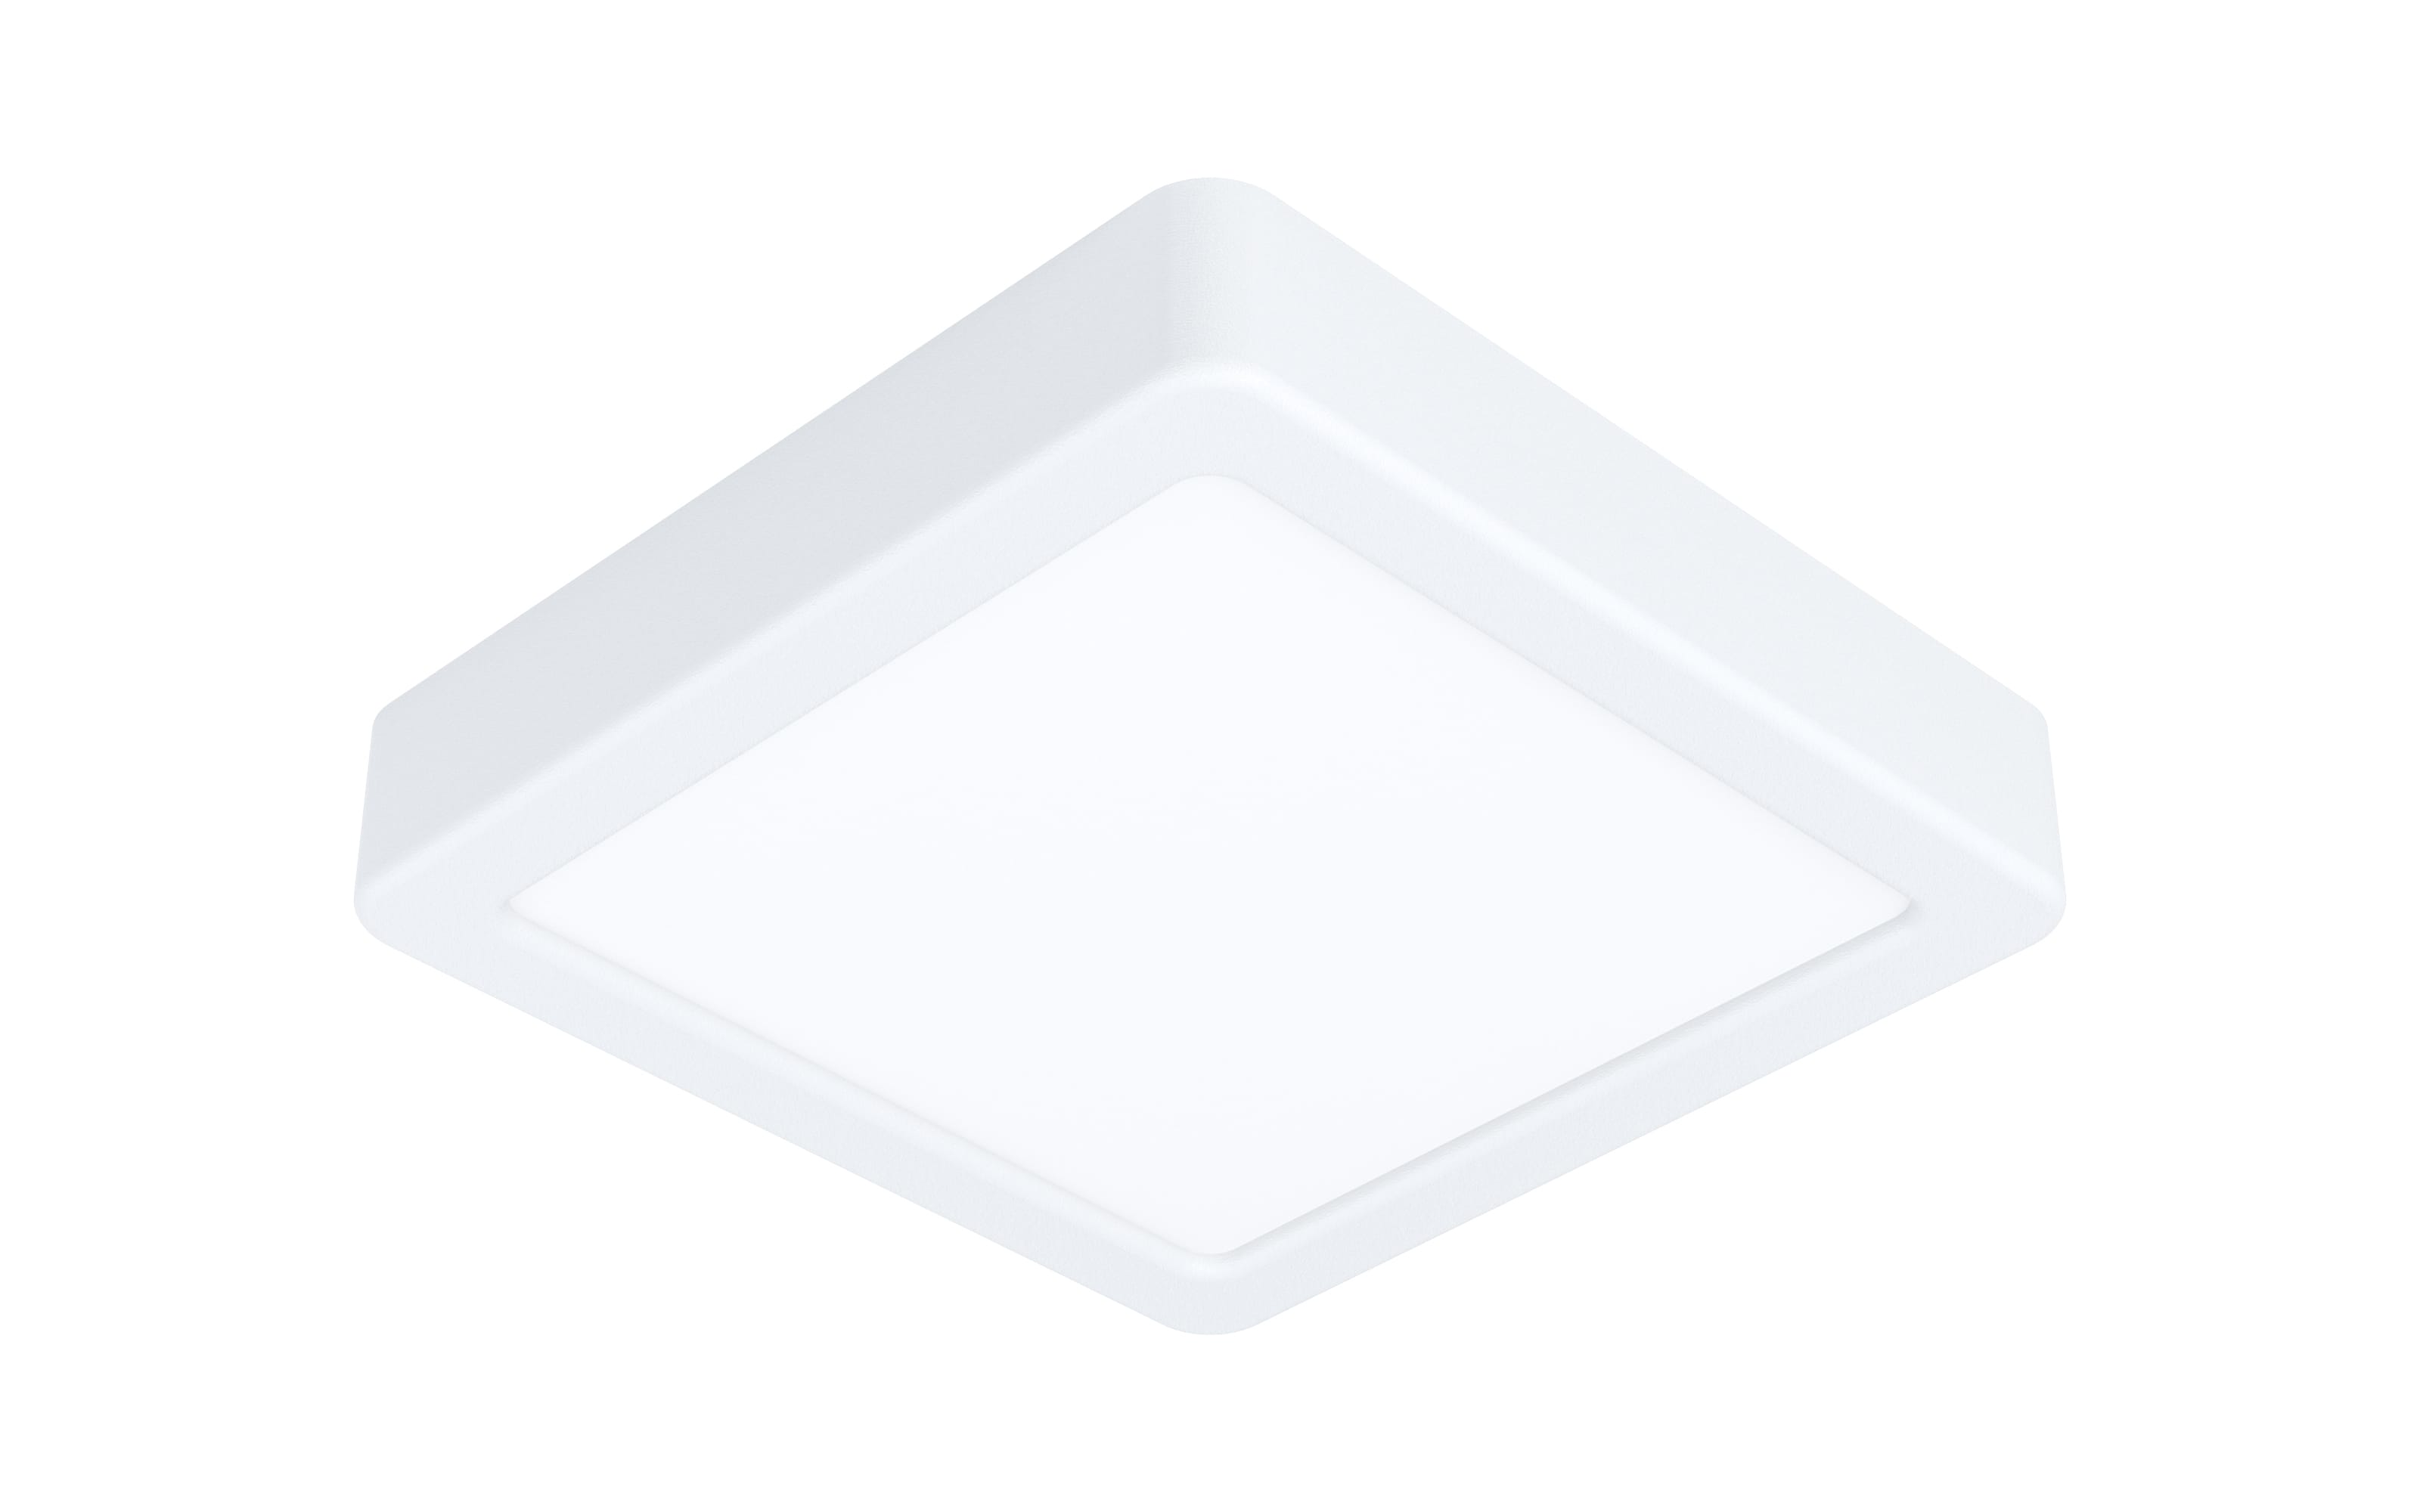 LED-Deckenleuchte Fueva 5, weiß, 1350 Lumen, 16 cm